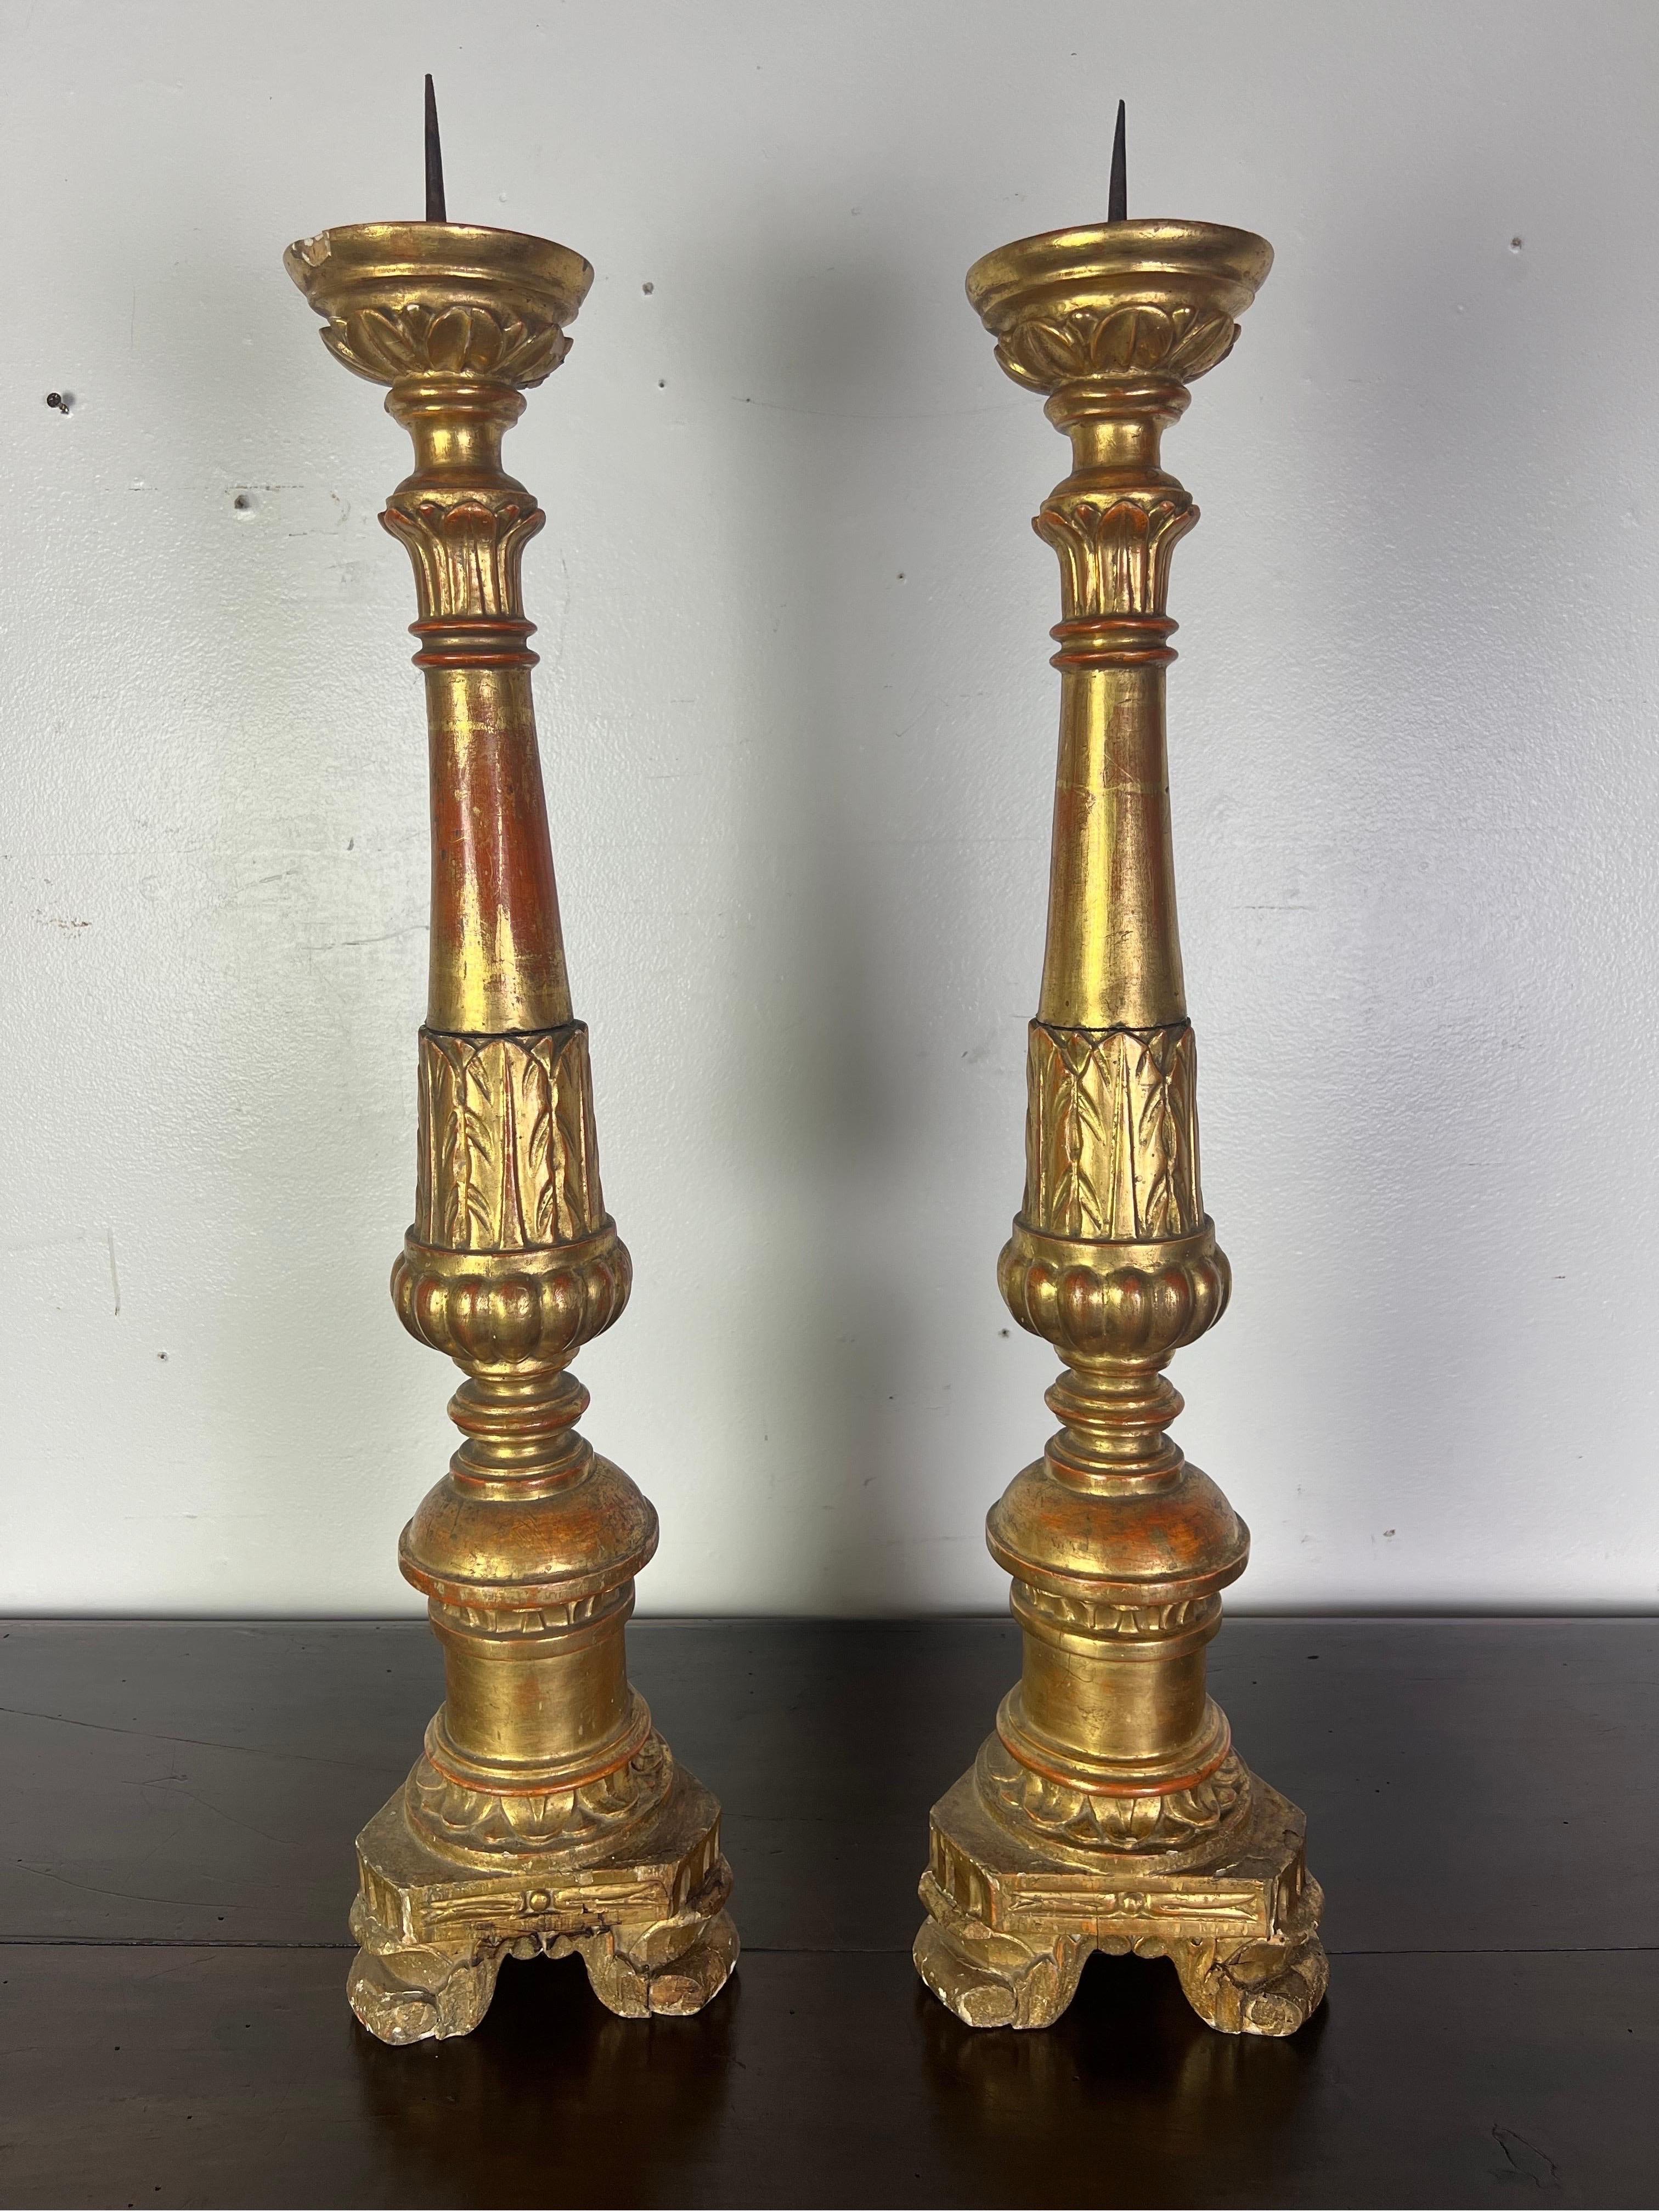 Cette paire de chandeliers italiens en bois doré du XIXe siècle, ornés de prickets et de feuilles d'acanthe magnifiquement sculptées, témoigne de l'opulence et de la minutie de l'artisanat de l'époque.  Le bois doré est un bois recouvert d'une fine